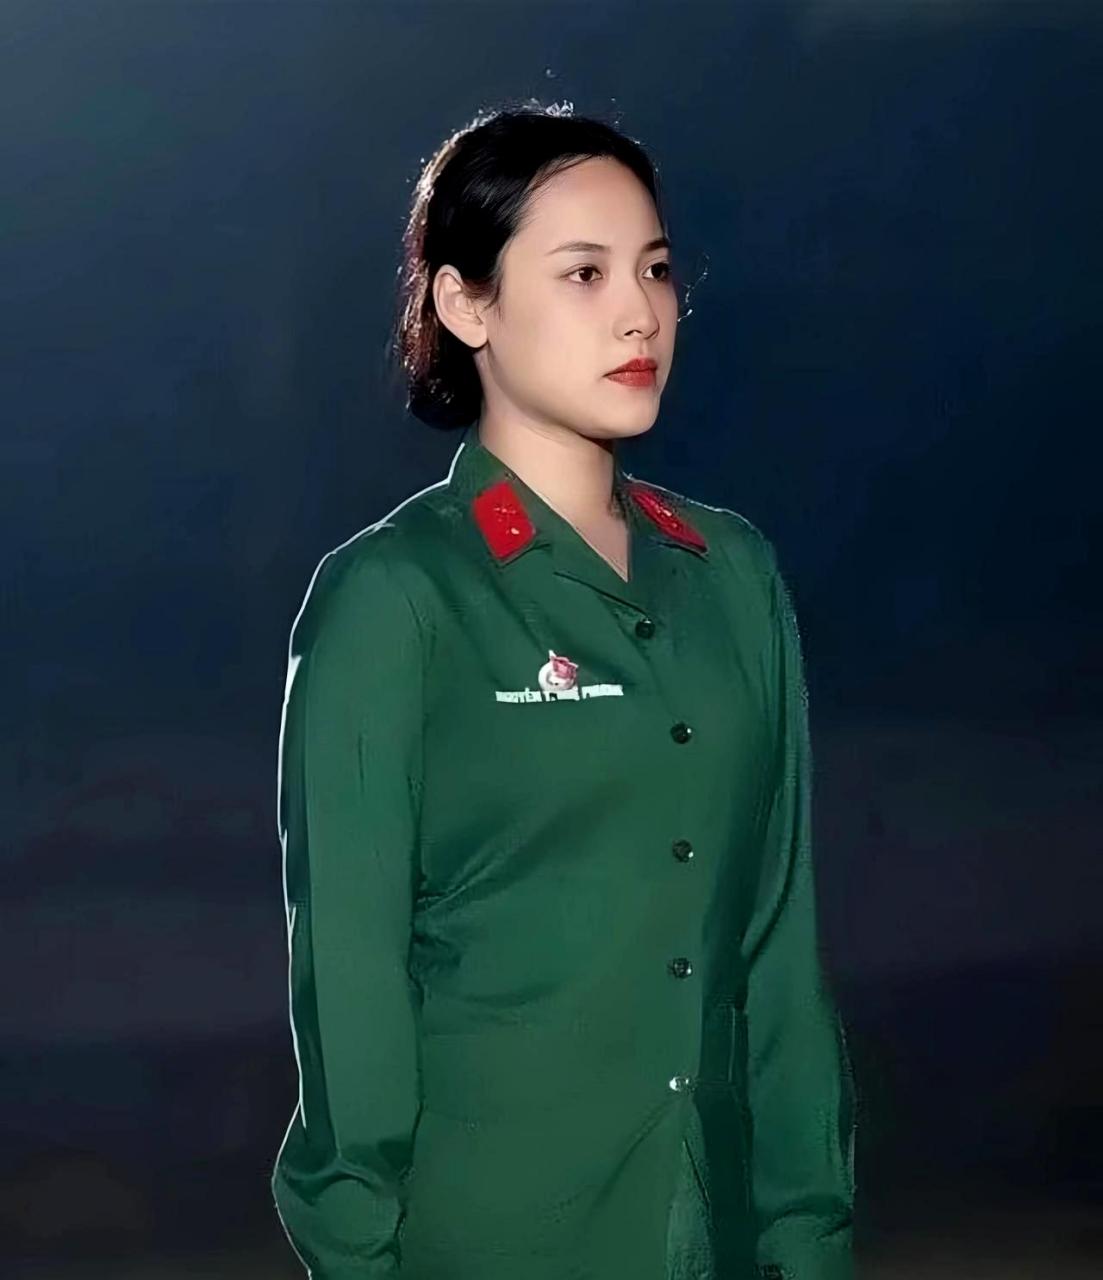 2012年,一位越南女兵因其美貌和精神面貌而在网络上走红